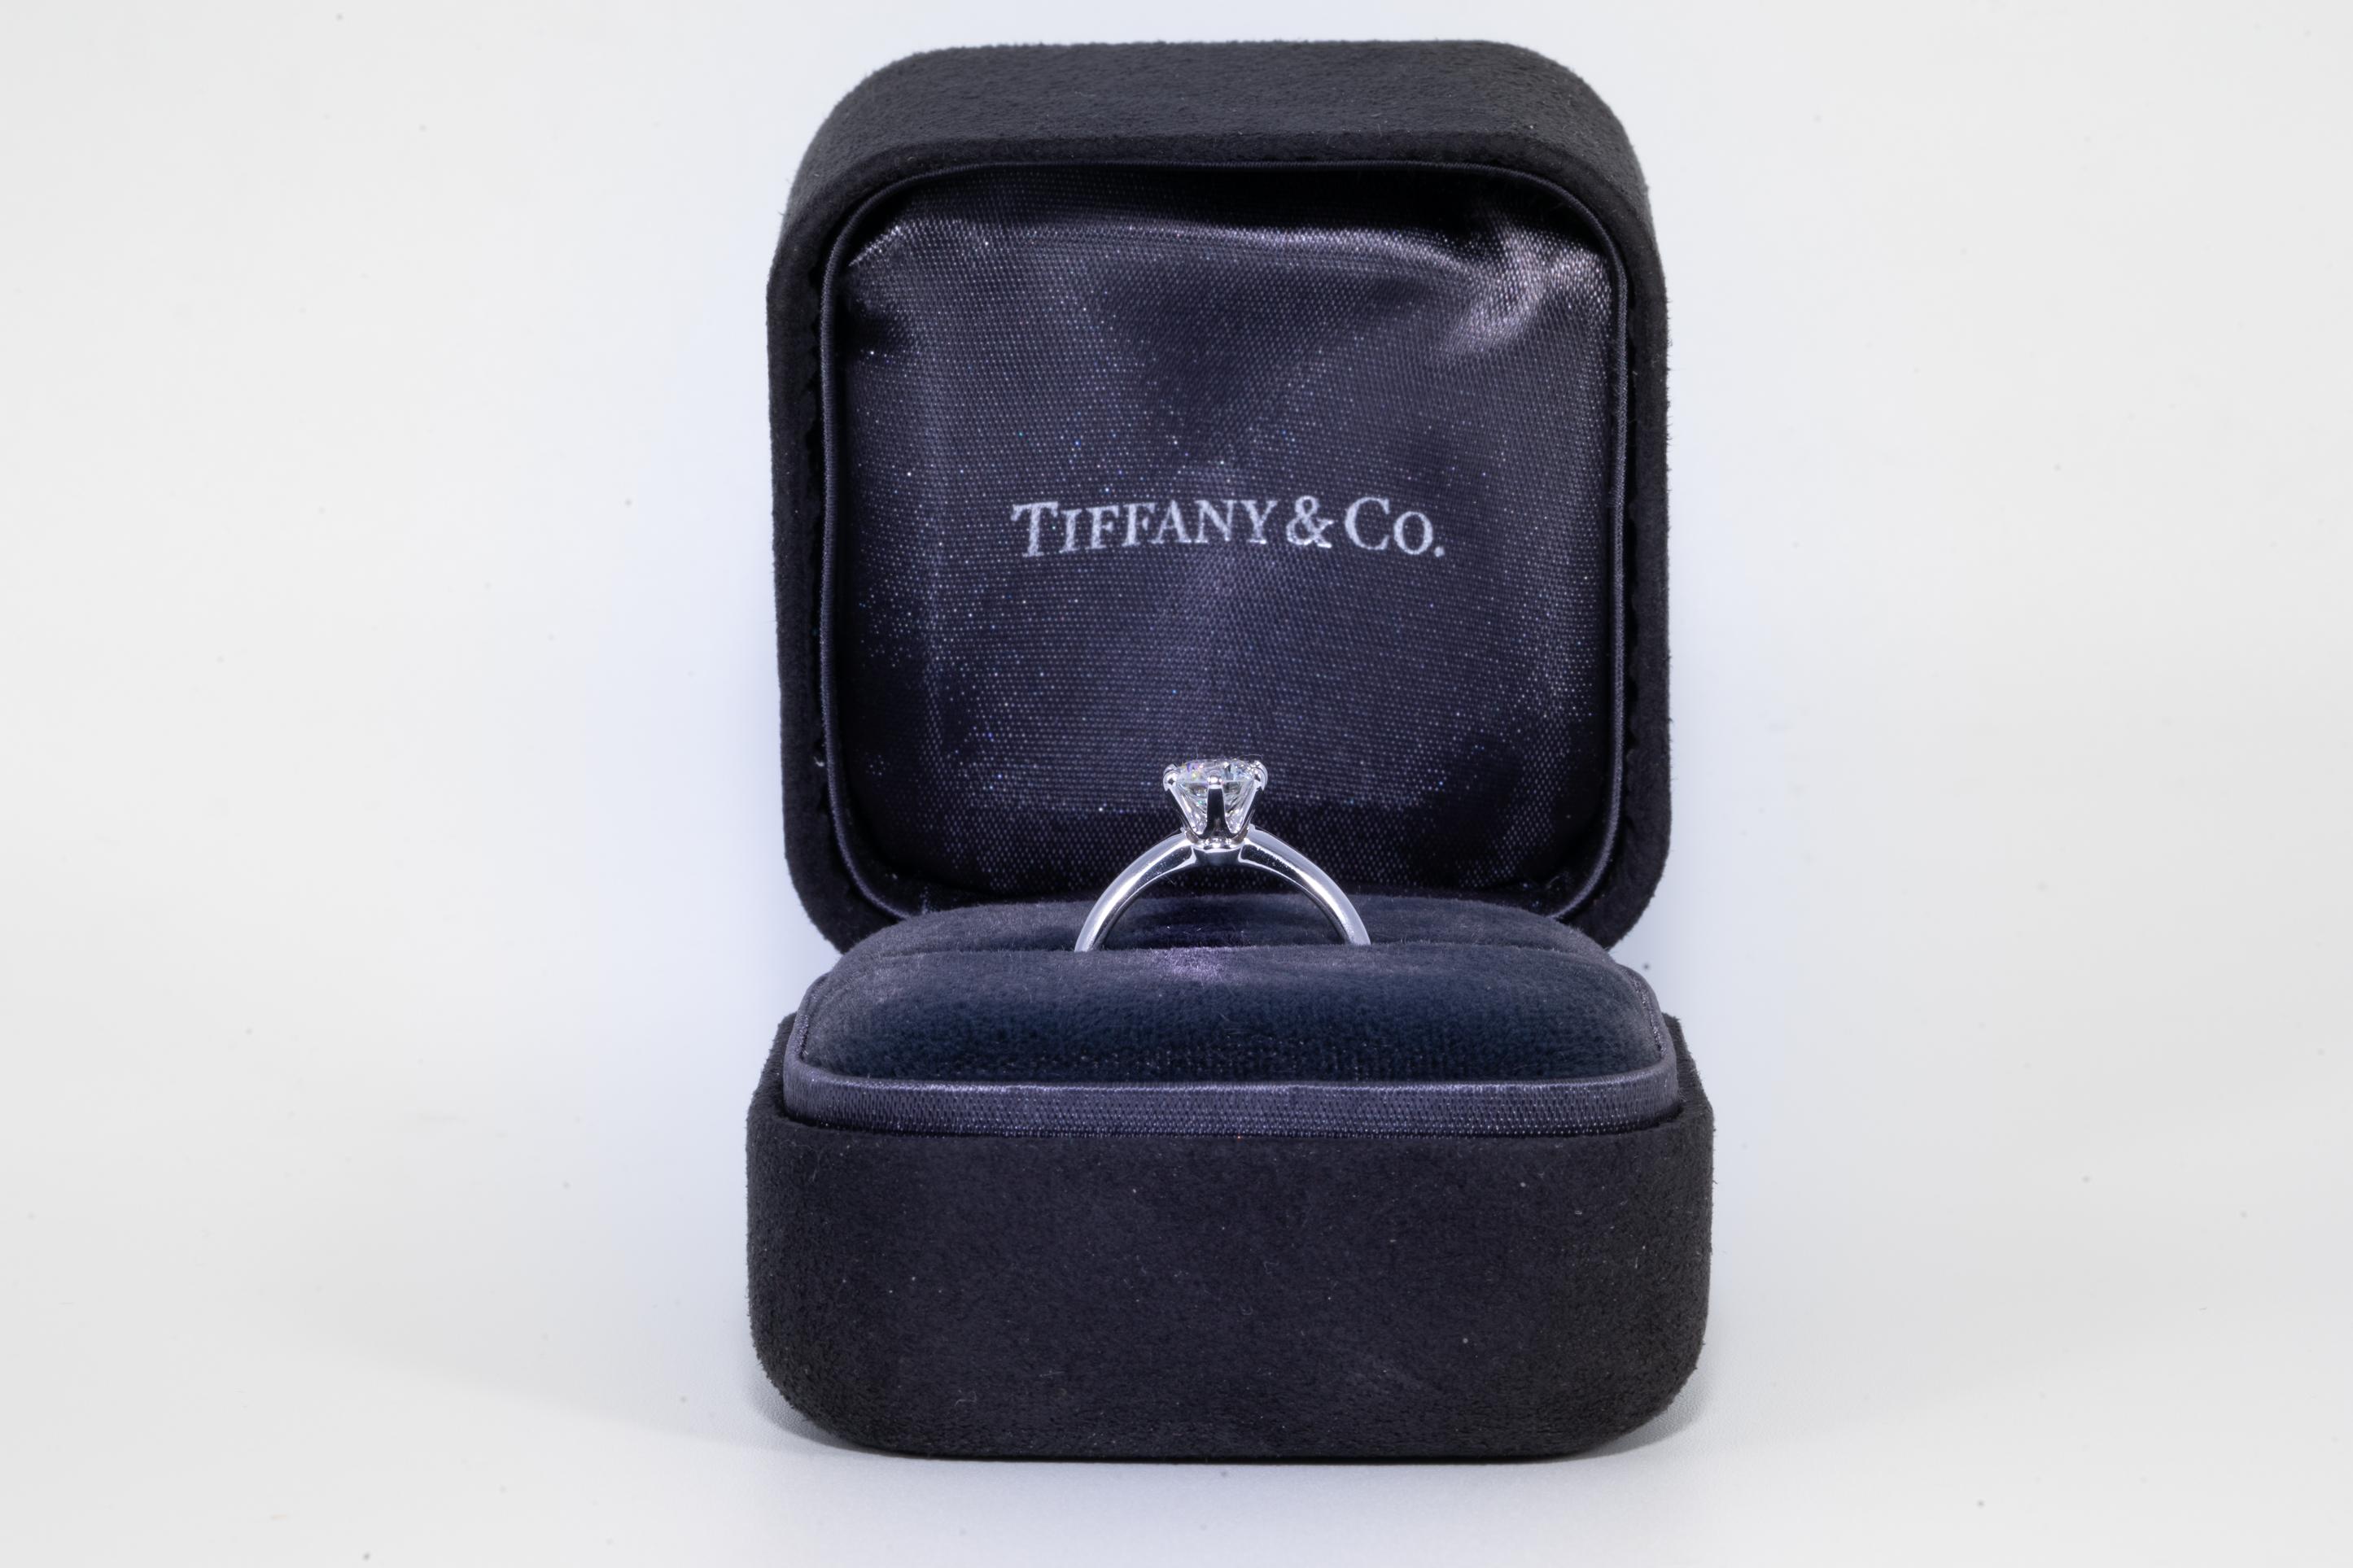 Tiffany & Co. Diamond Engagement Solitaire unterzeichnet von Tiffany & Co. mit einem .92 ct Center:: abgestuft I Farbe und VS2 Klarheit. 
In Platin

Ring ist derzeit eine Größe 6 und kann fachmännisch und nahtlos re-sized

Von Tiffany Website